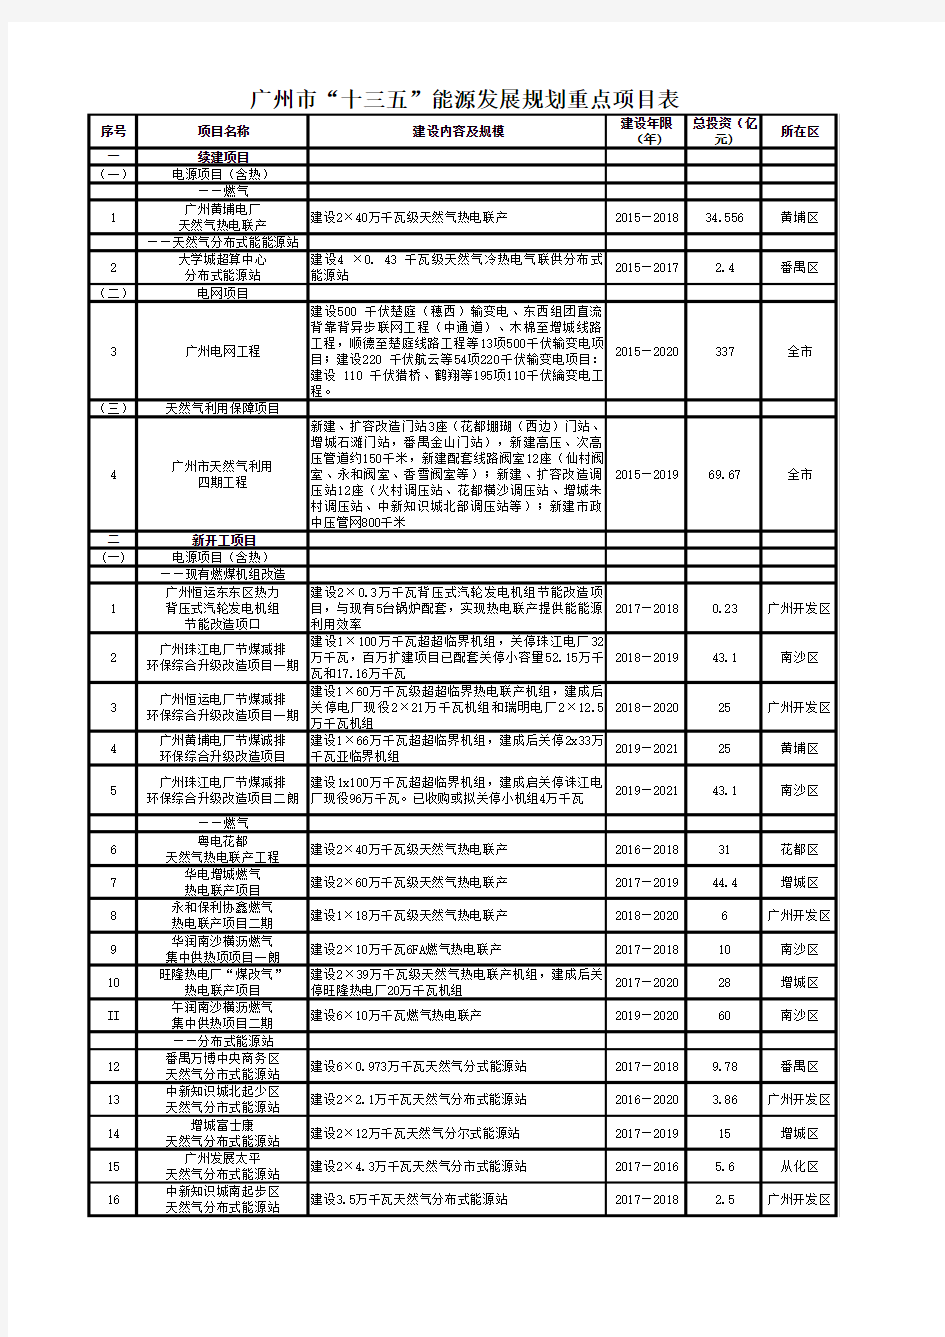 广州市“十三五”能源发展规划重点项目表